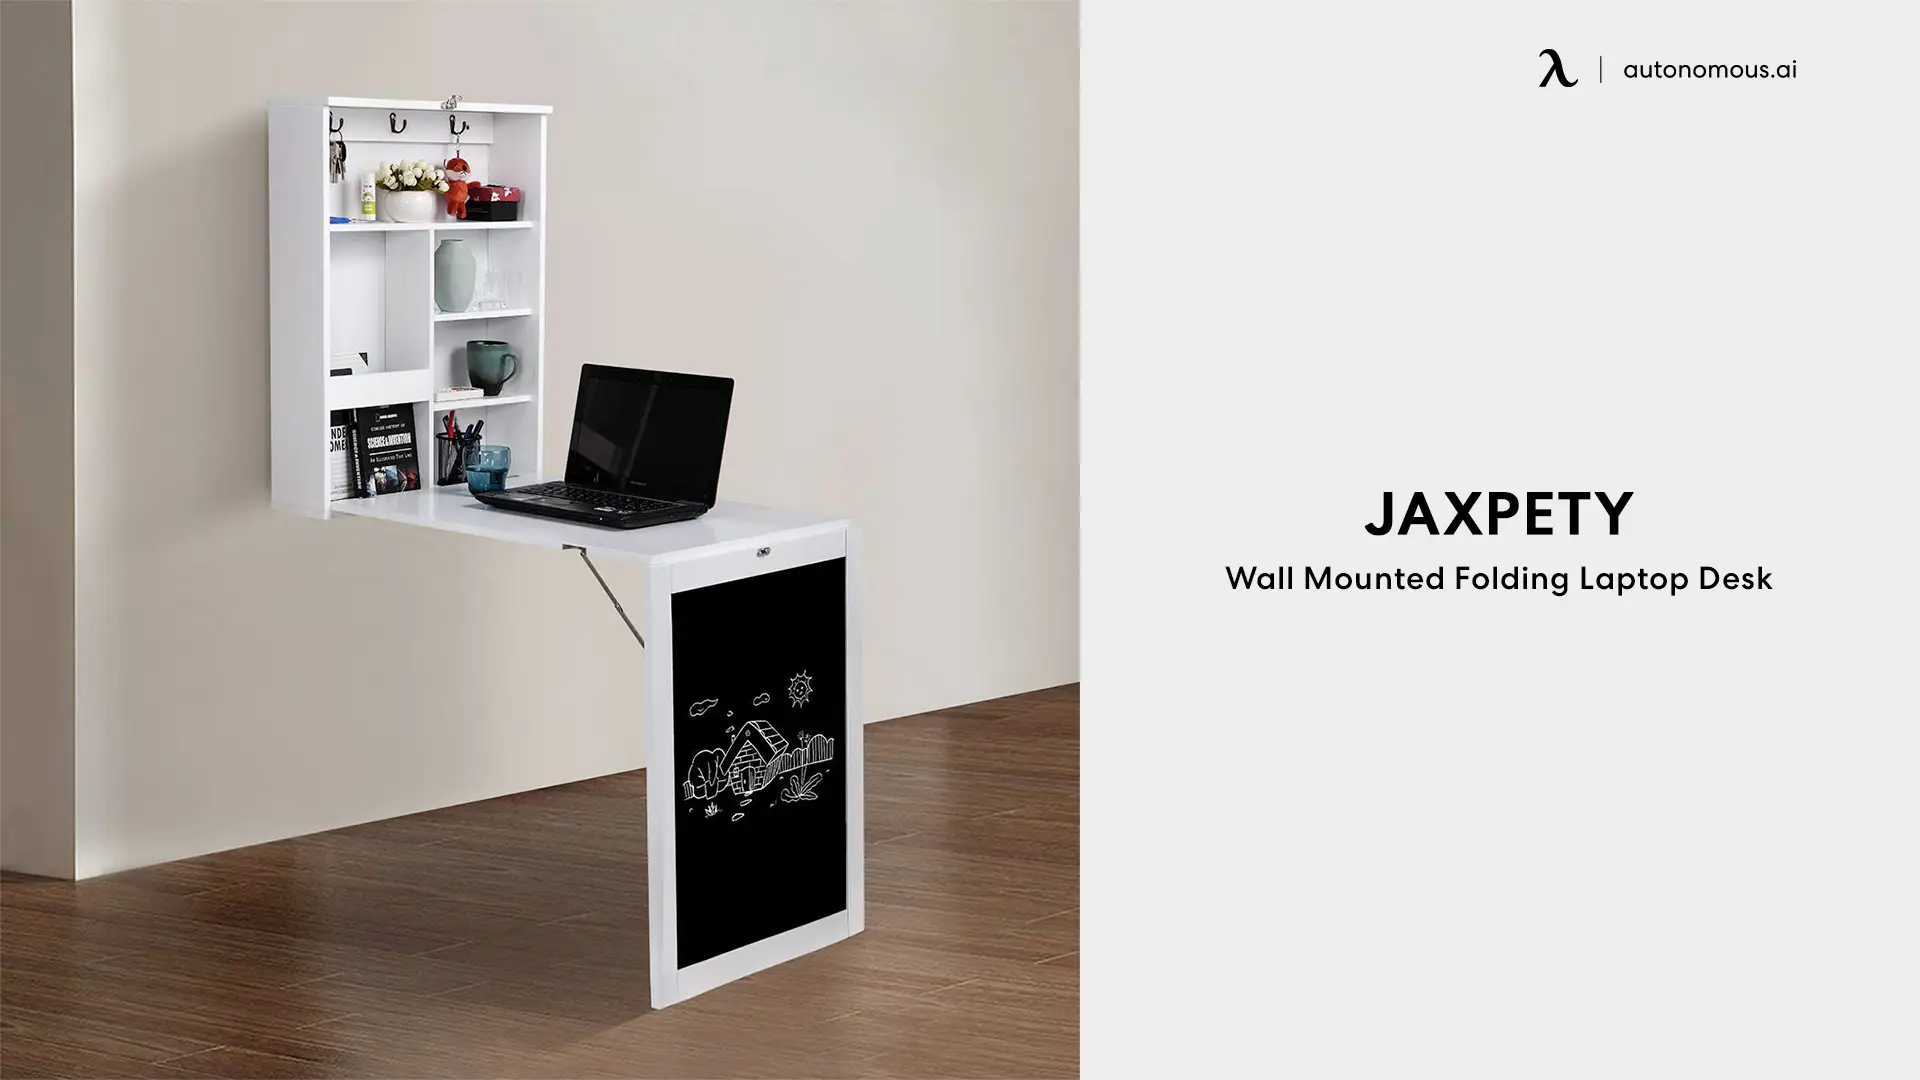 Jaxpety Wall Mounted Folding Laptop Desk